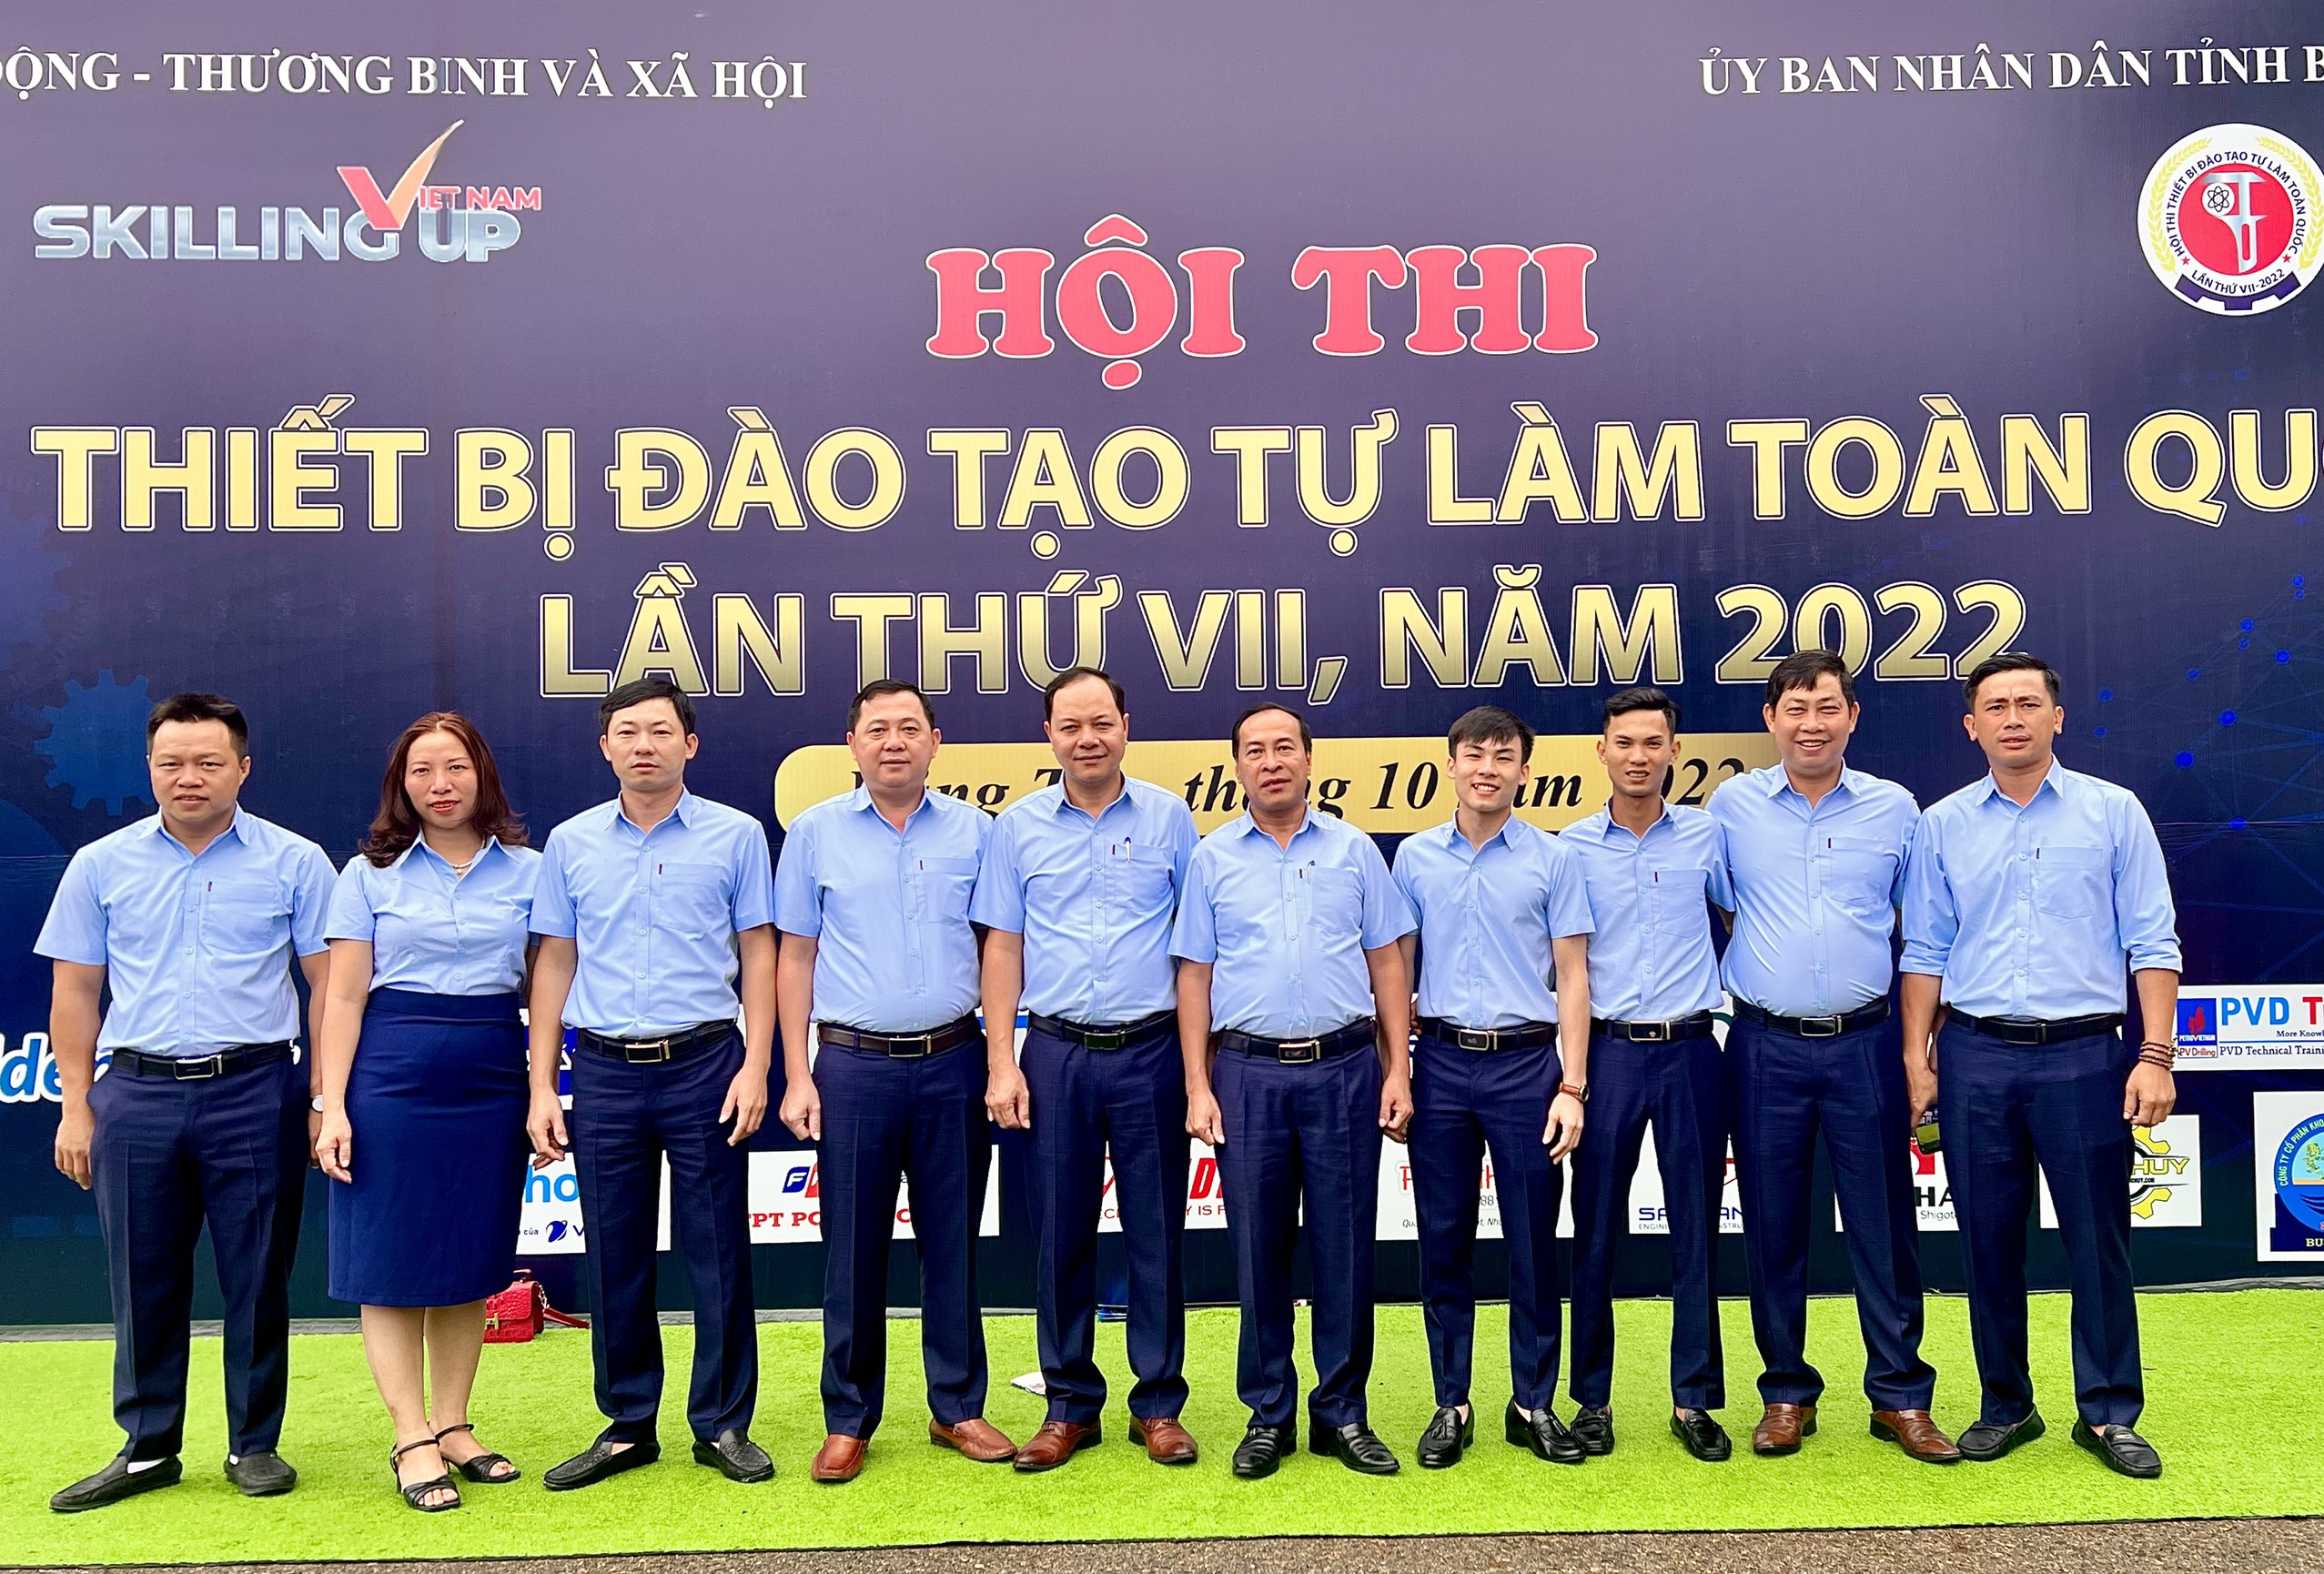 Trường Cao đẳng Việt – Đức Nghệ An đạt thành tích cao tại Hội thi thiết bị đào tạo tự làm toàn quốc lần thứ VII năm 2022